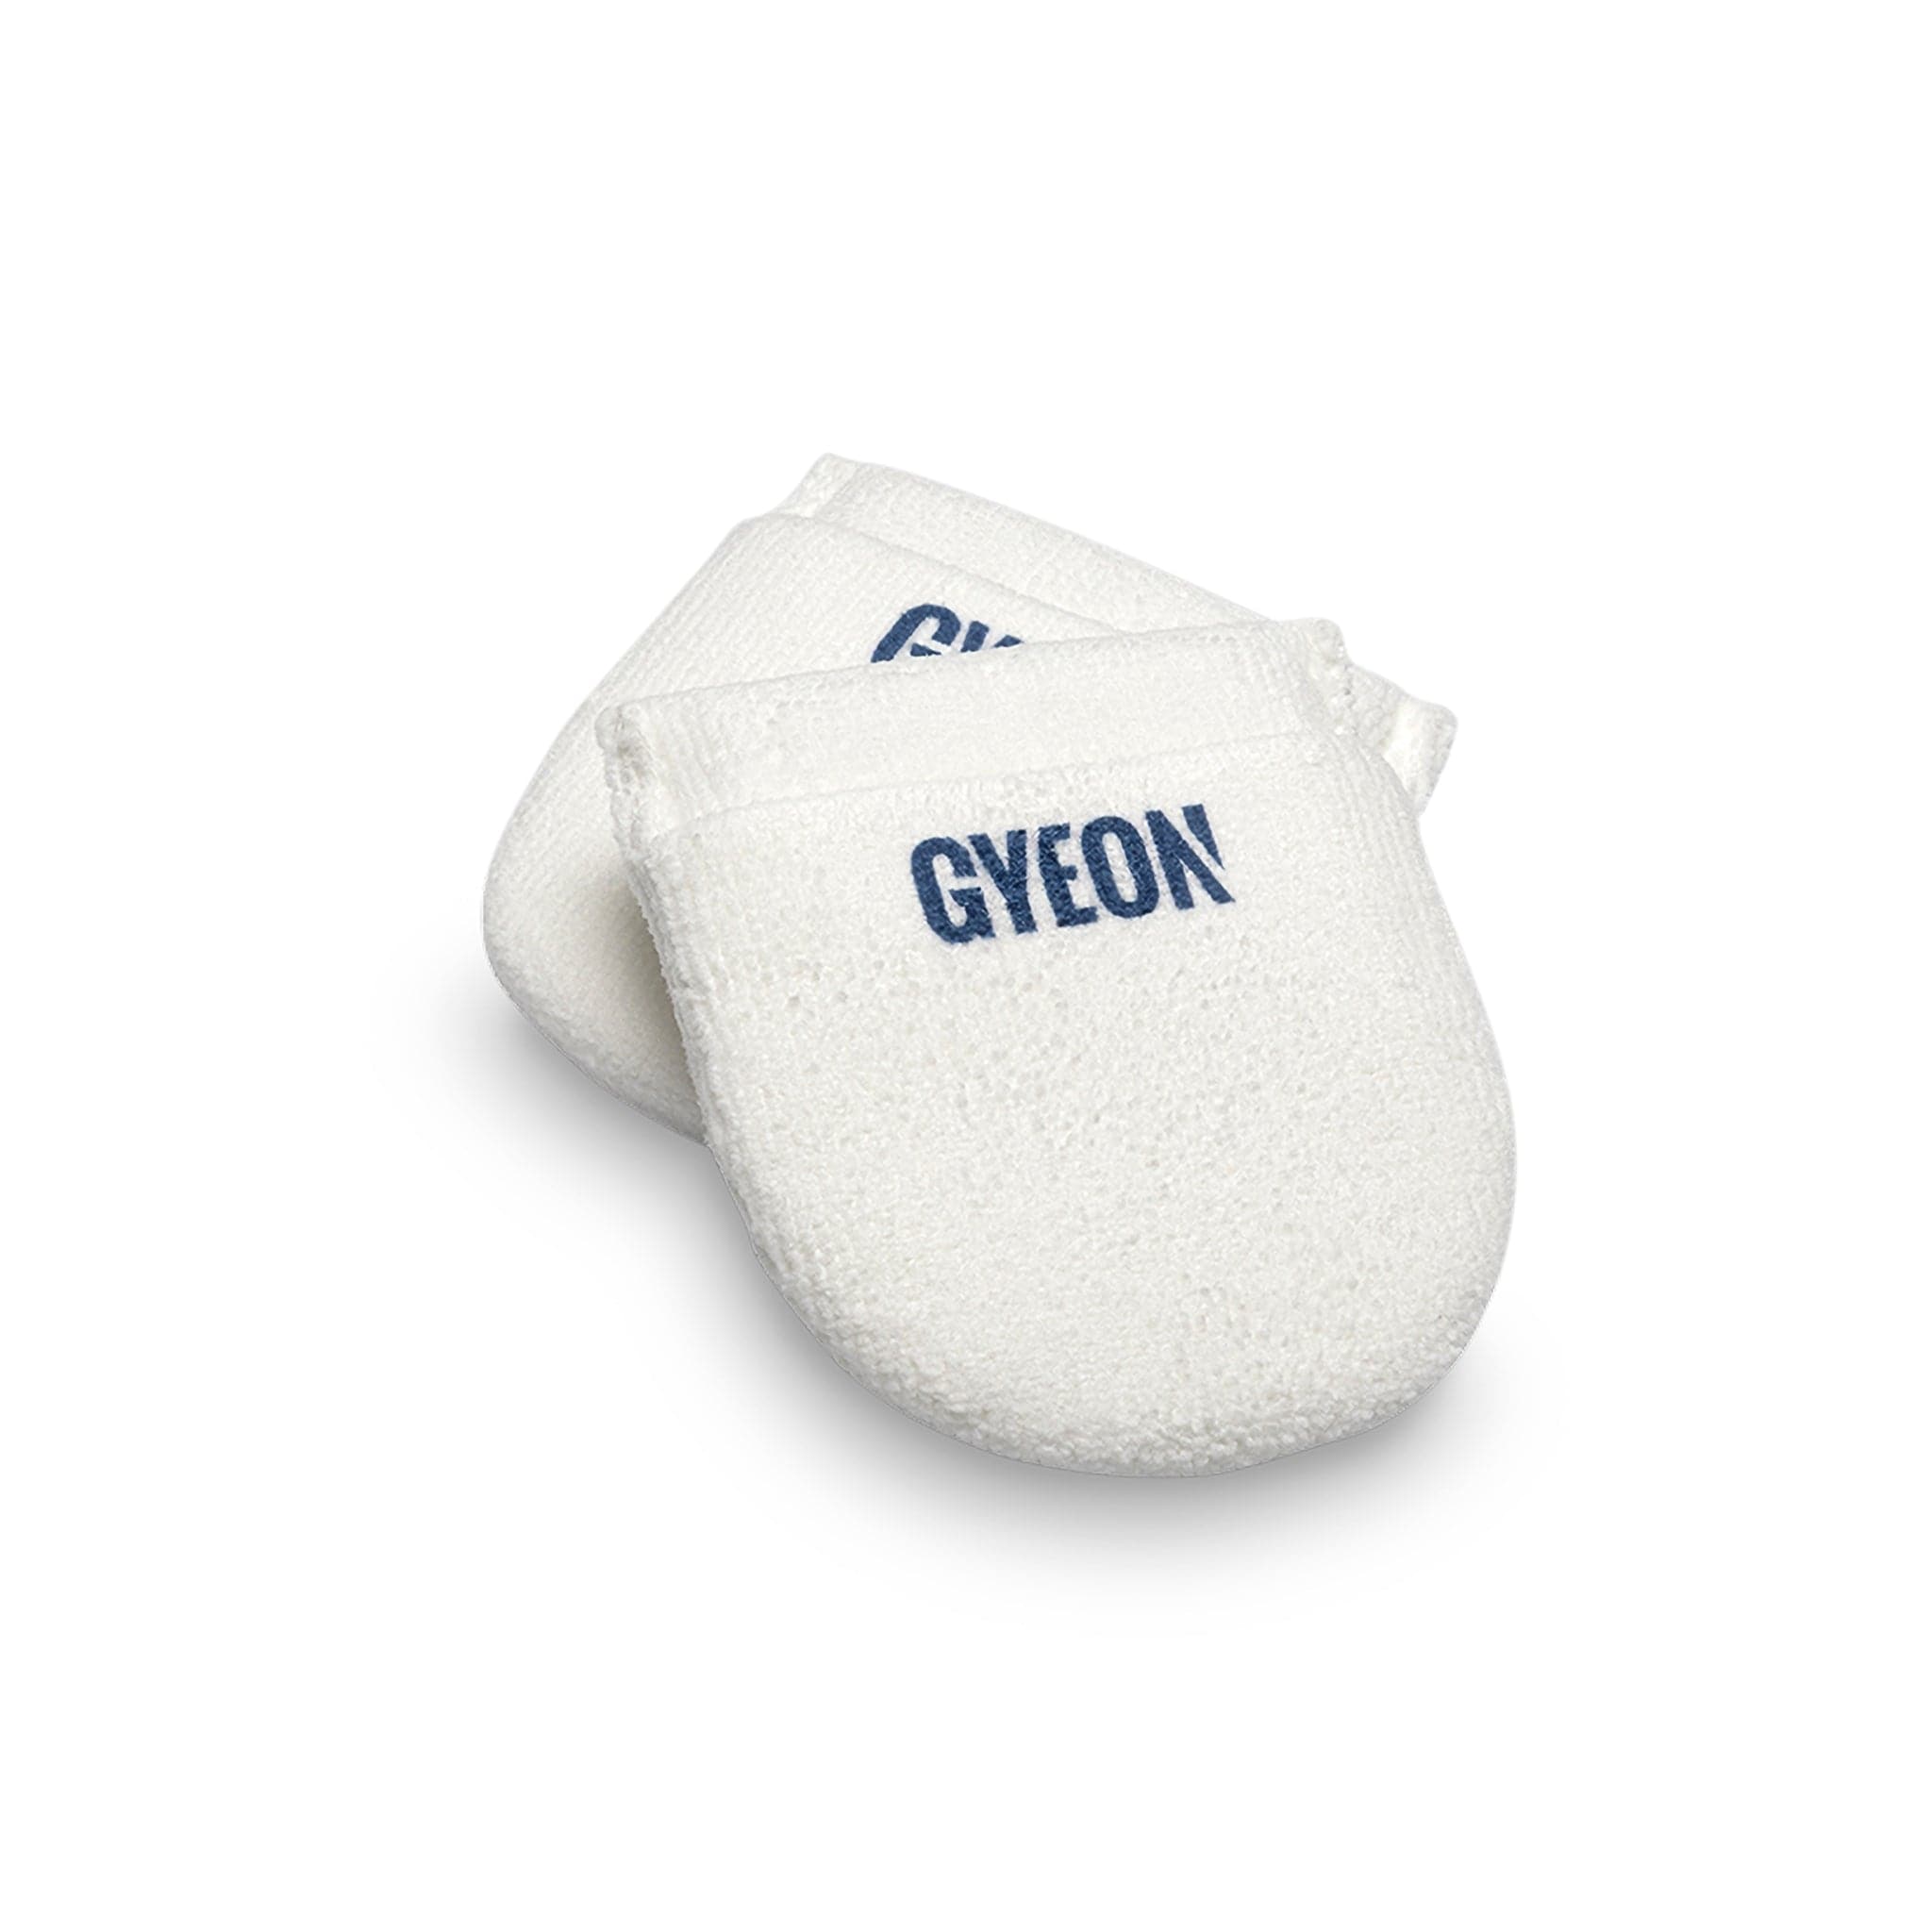 Gyeon Q2M Coating Applicator 2-Pack